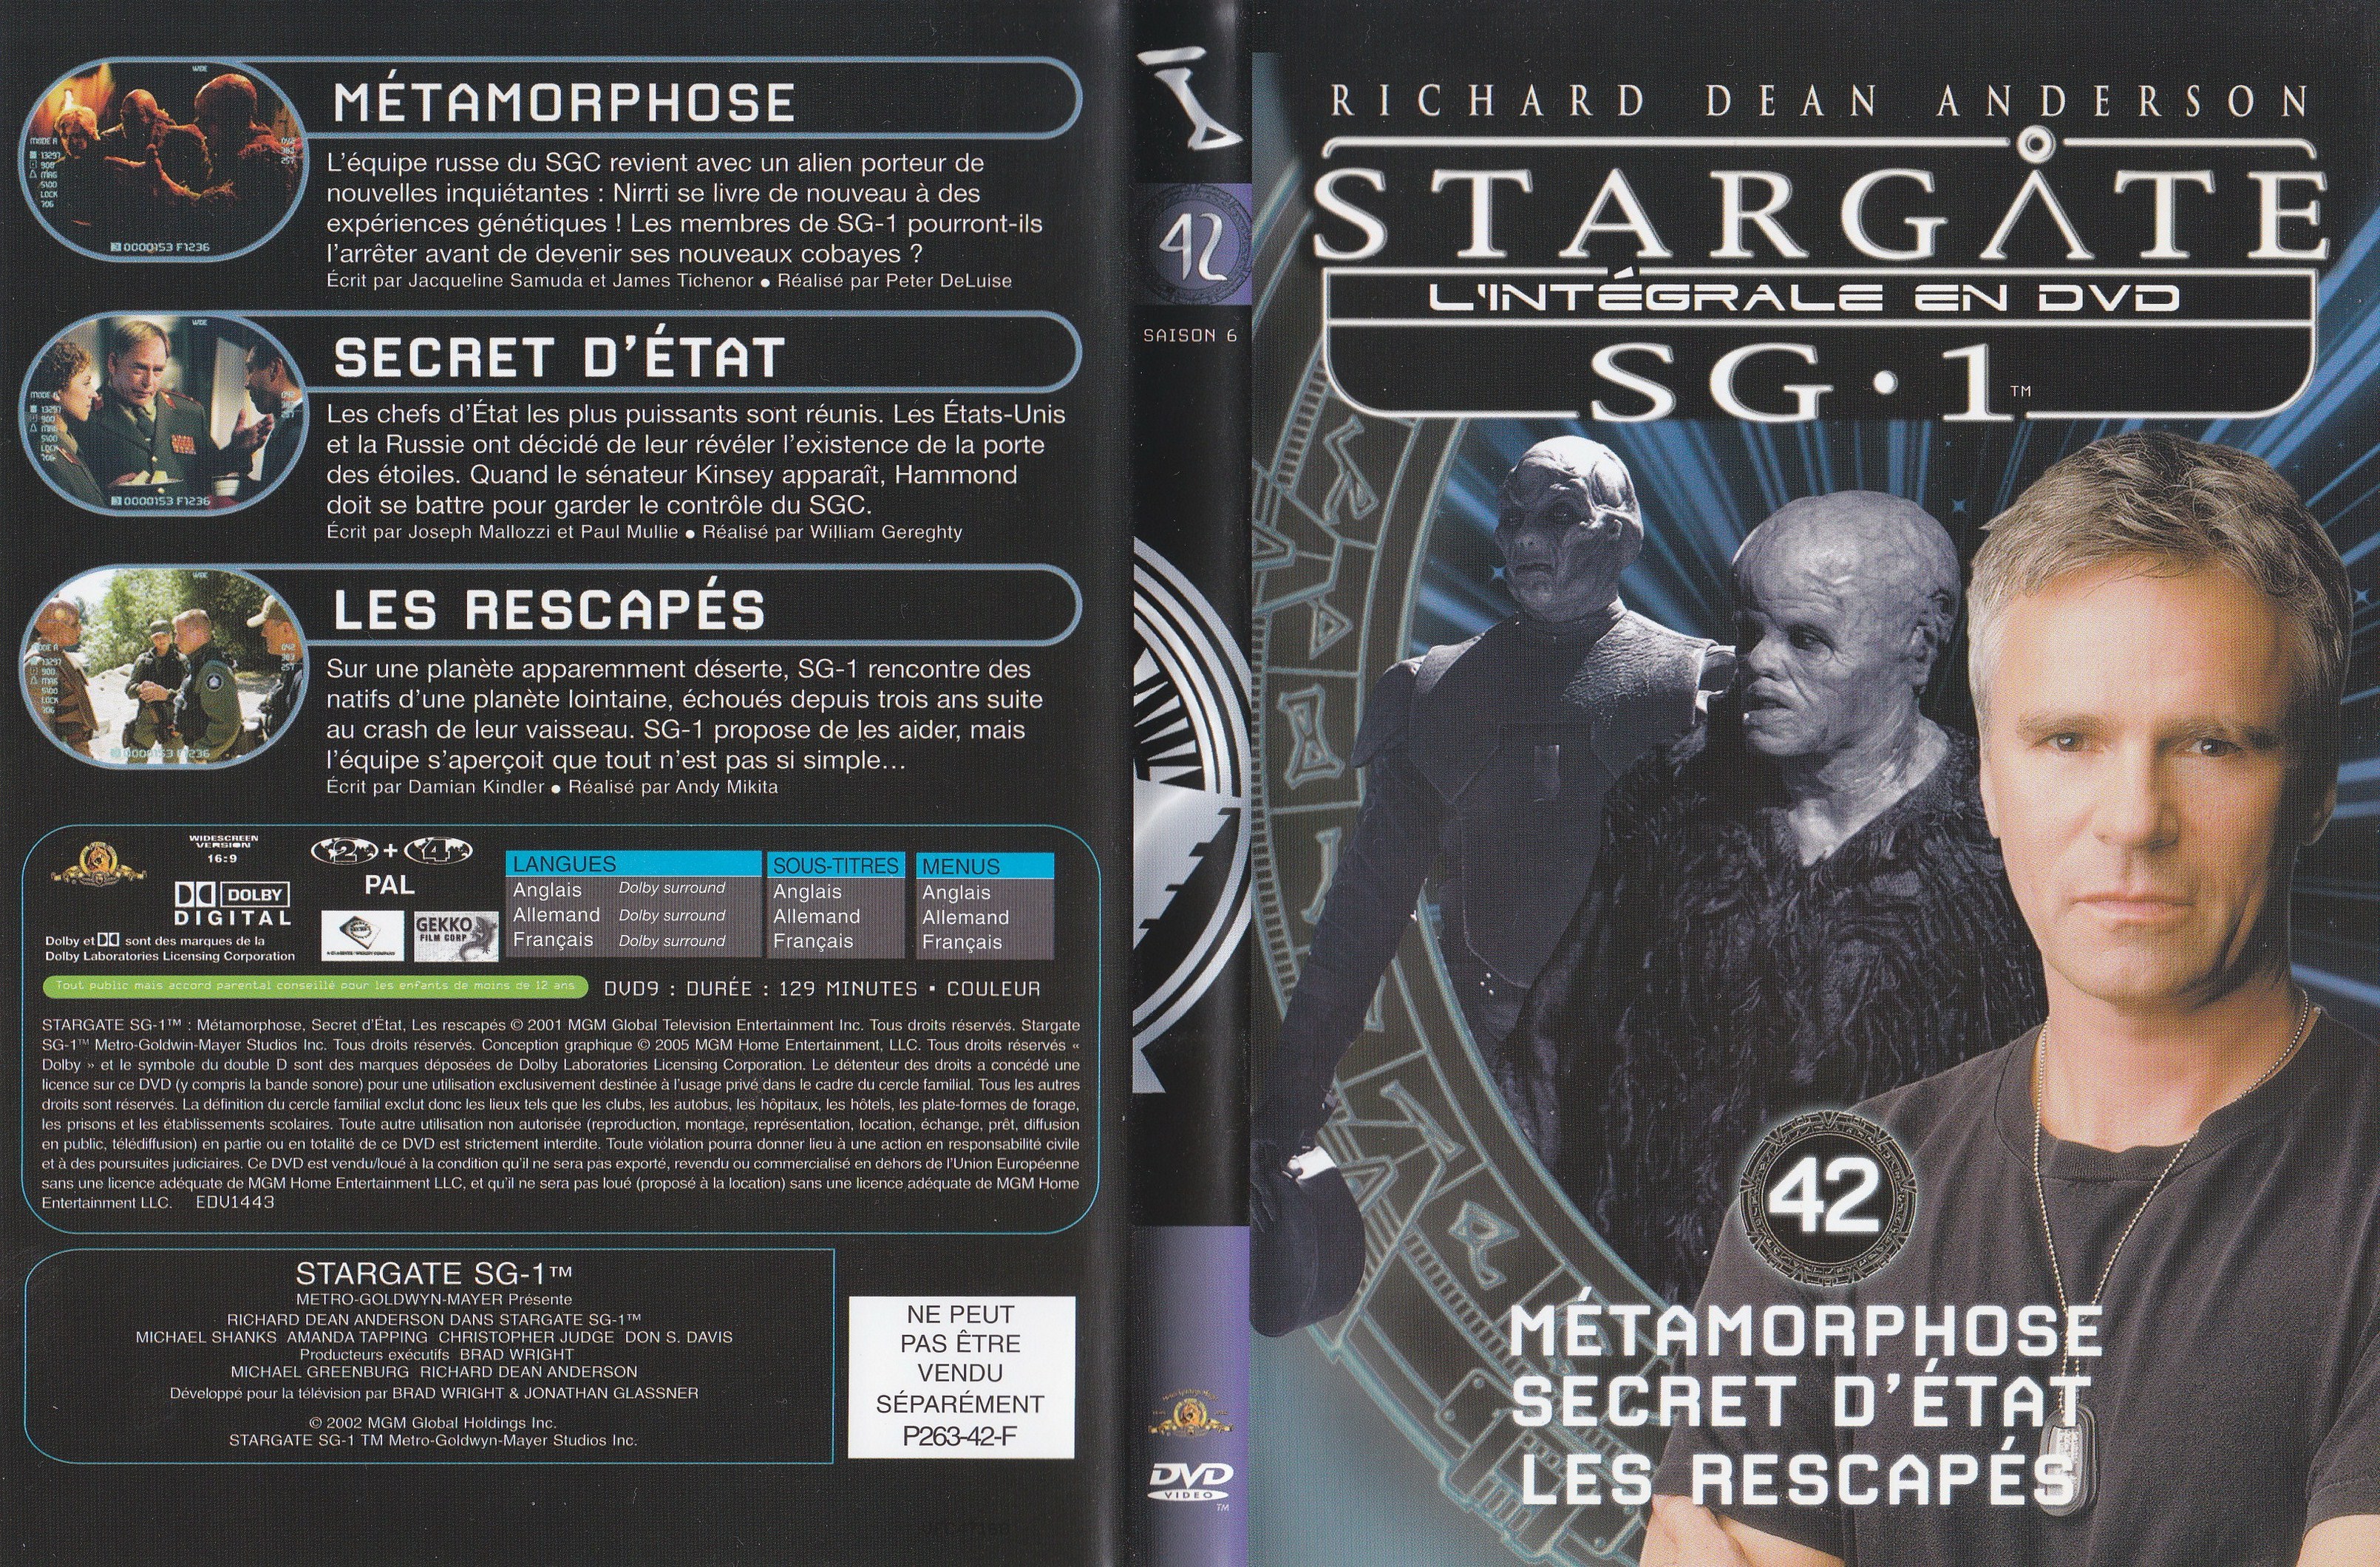 Stargate SG1 Intgrale Saison 6 vol 42